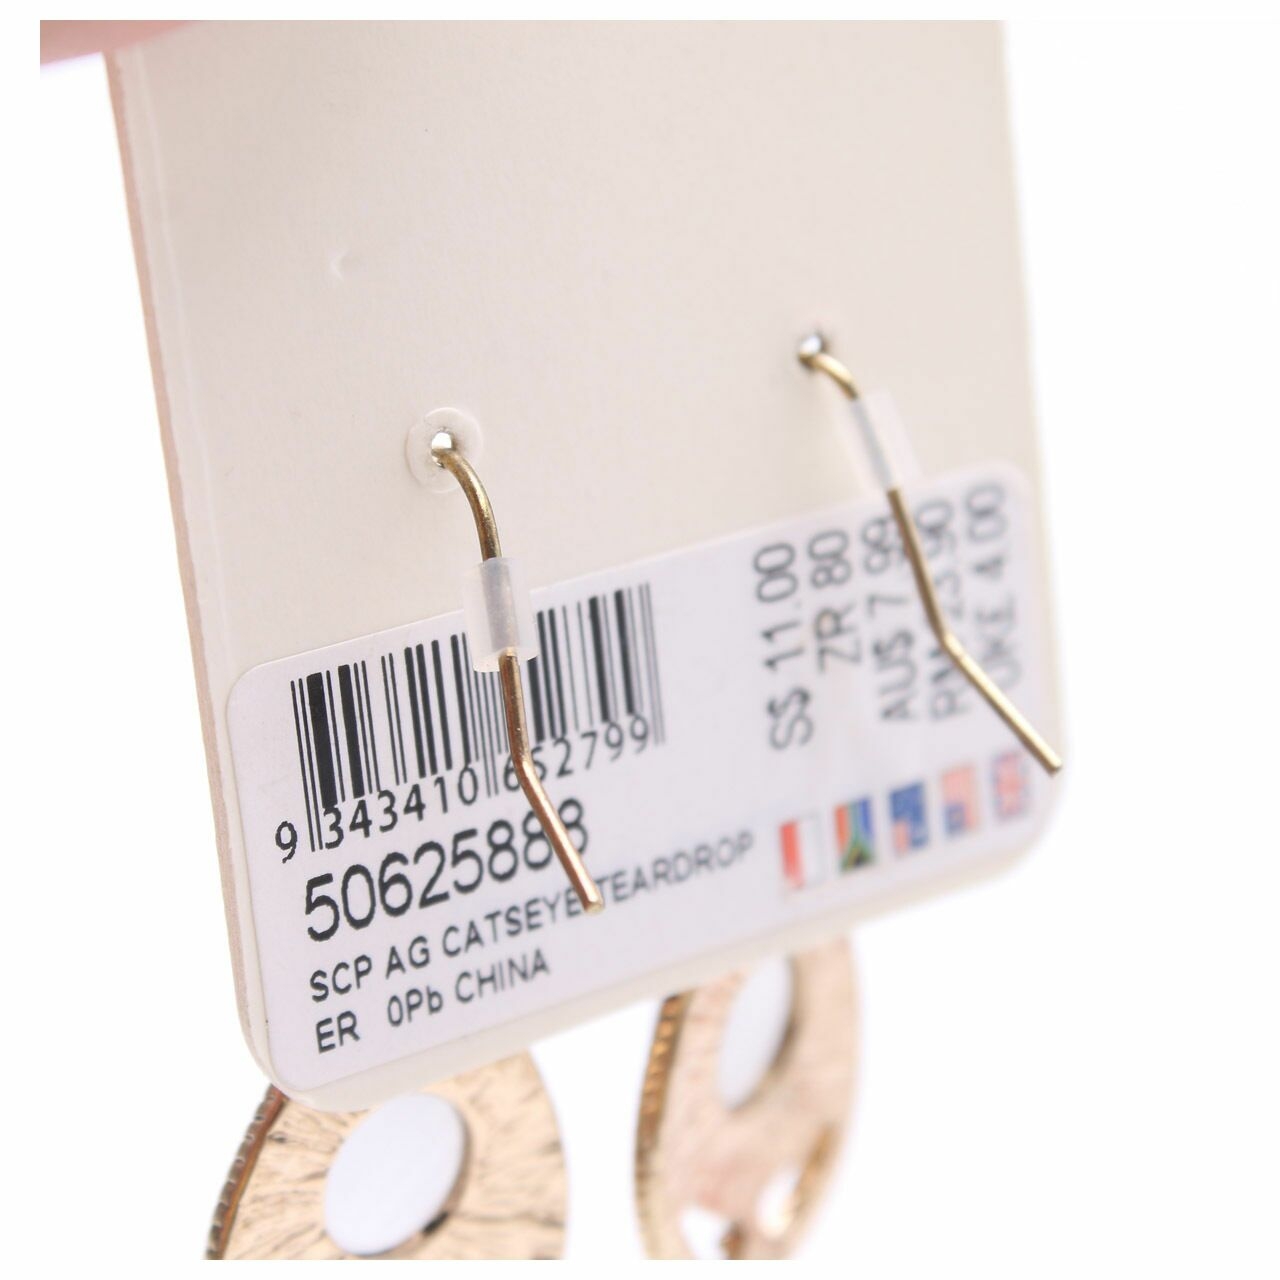 Lovisa Gold Earrings Jewelry